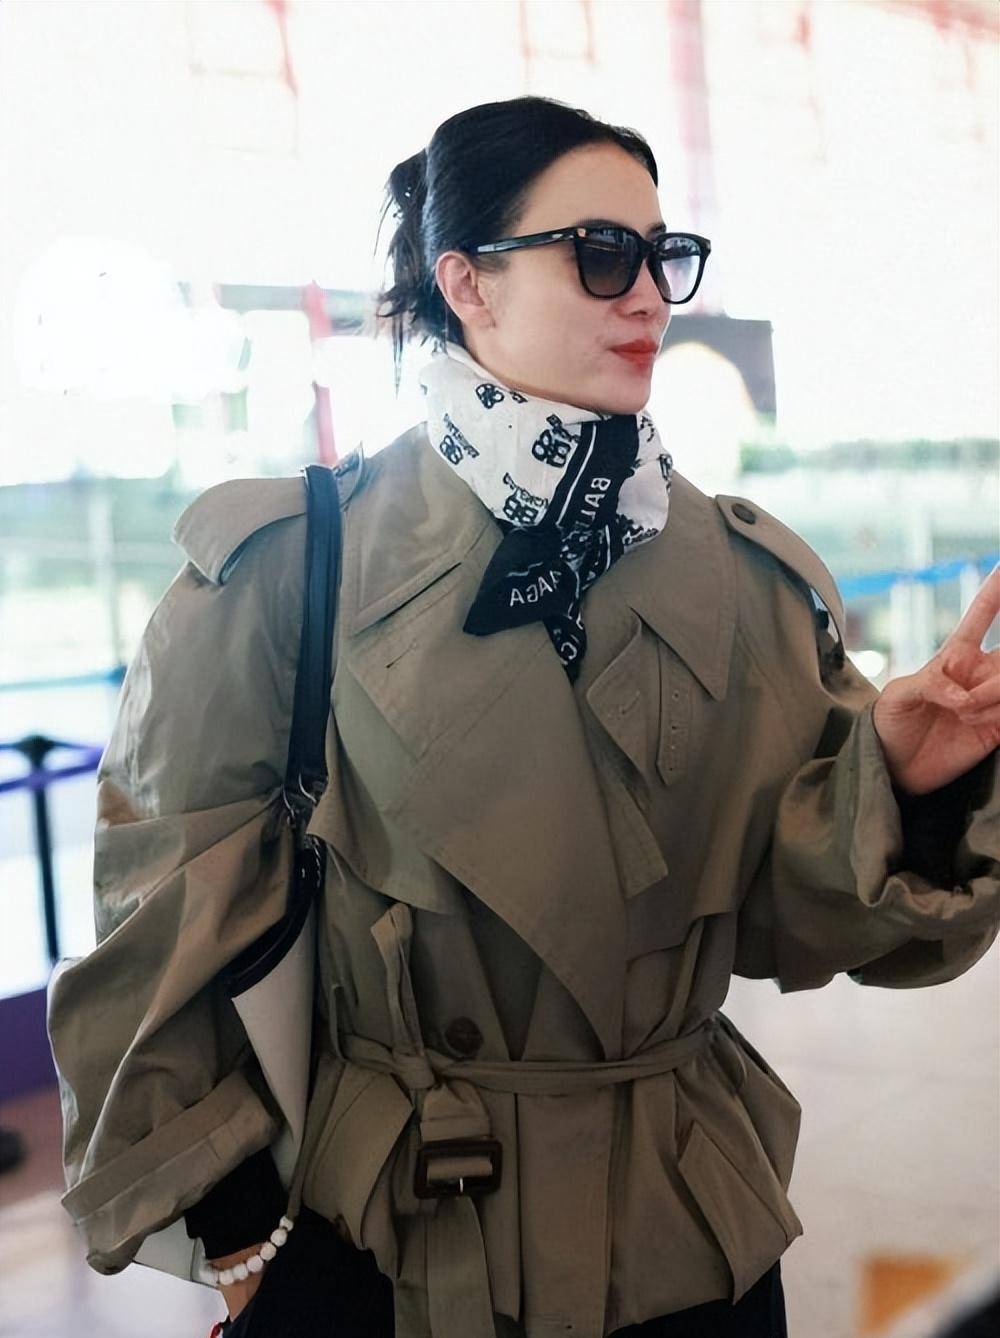 宋佳亮相北京机场,绿色工装外套搭配黑色运动裤,酷炫干练似少女